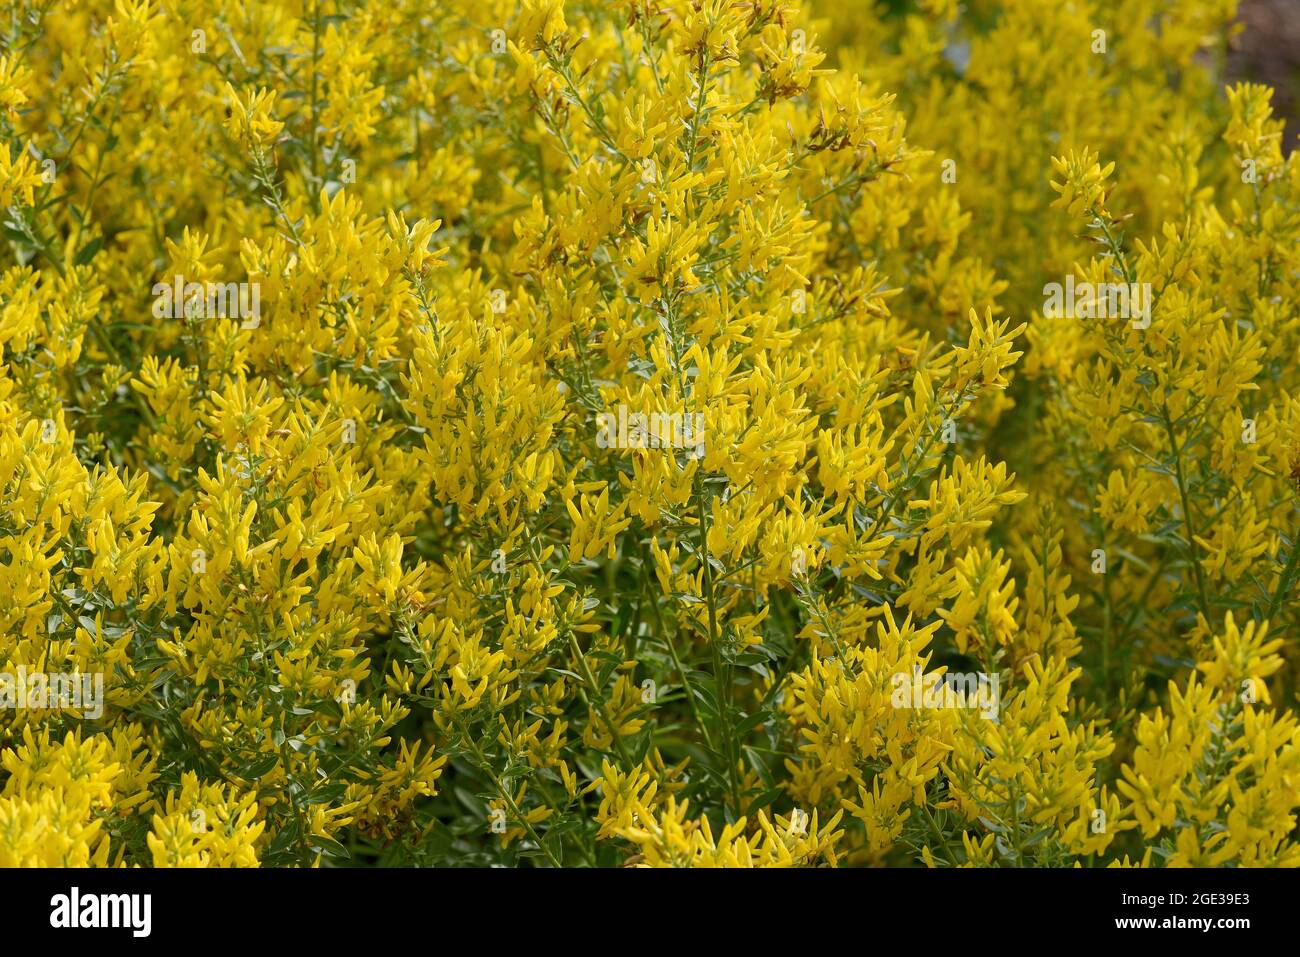 Faerberginster, Genista tinctoria, ist eine wichtige Heilpflanze mit gelben Blueten und wird viel in der Medizin verwendet. Sie ist eine Staude und ge Stock Photo